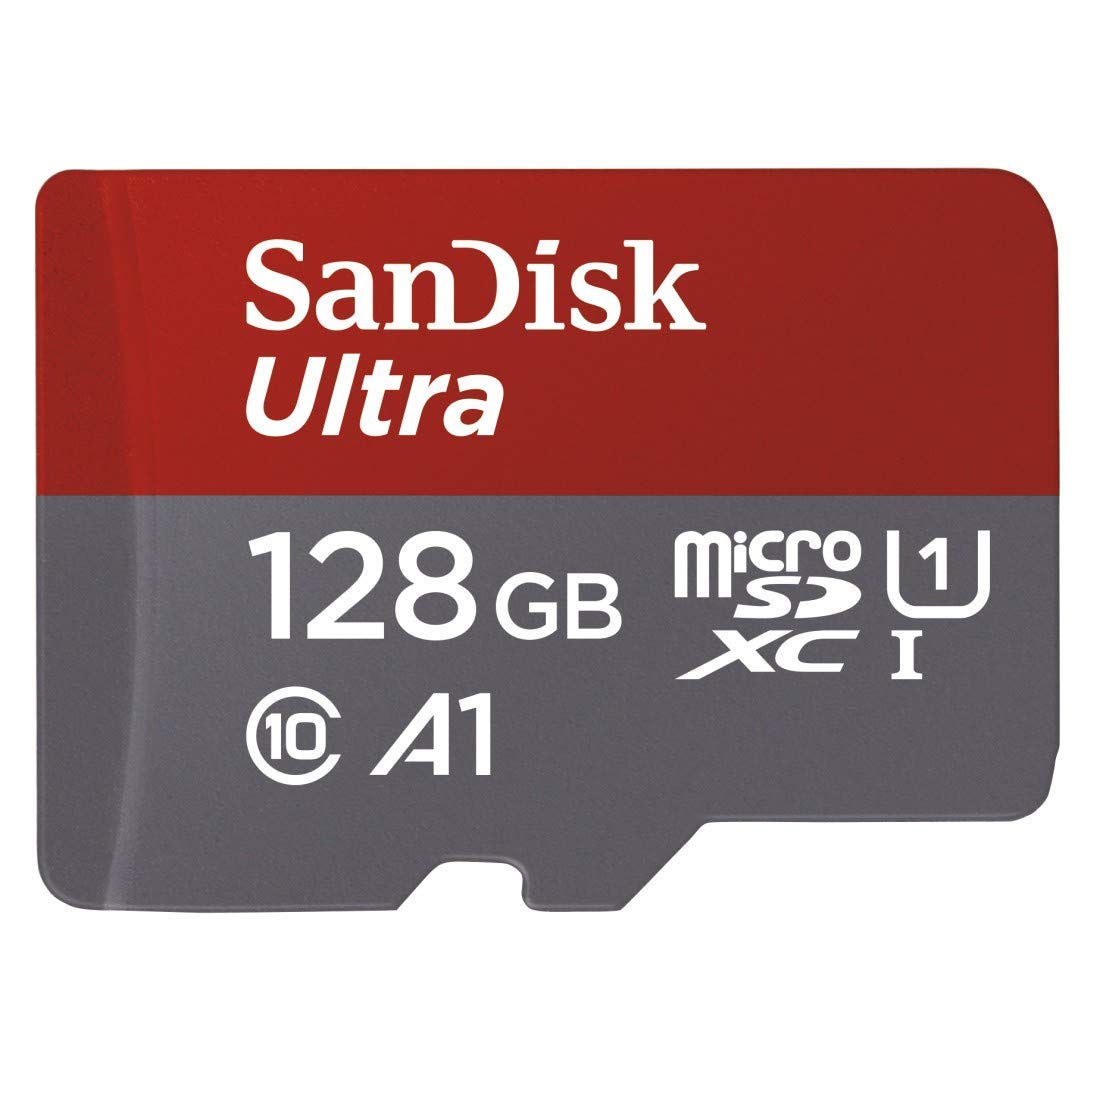 SD de 128 GB Sandisk solo 17€